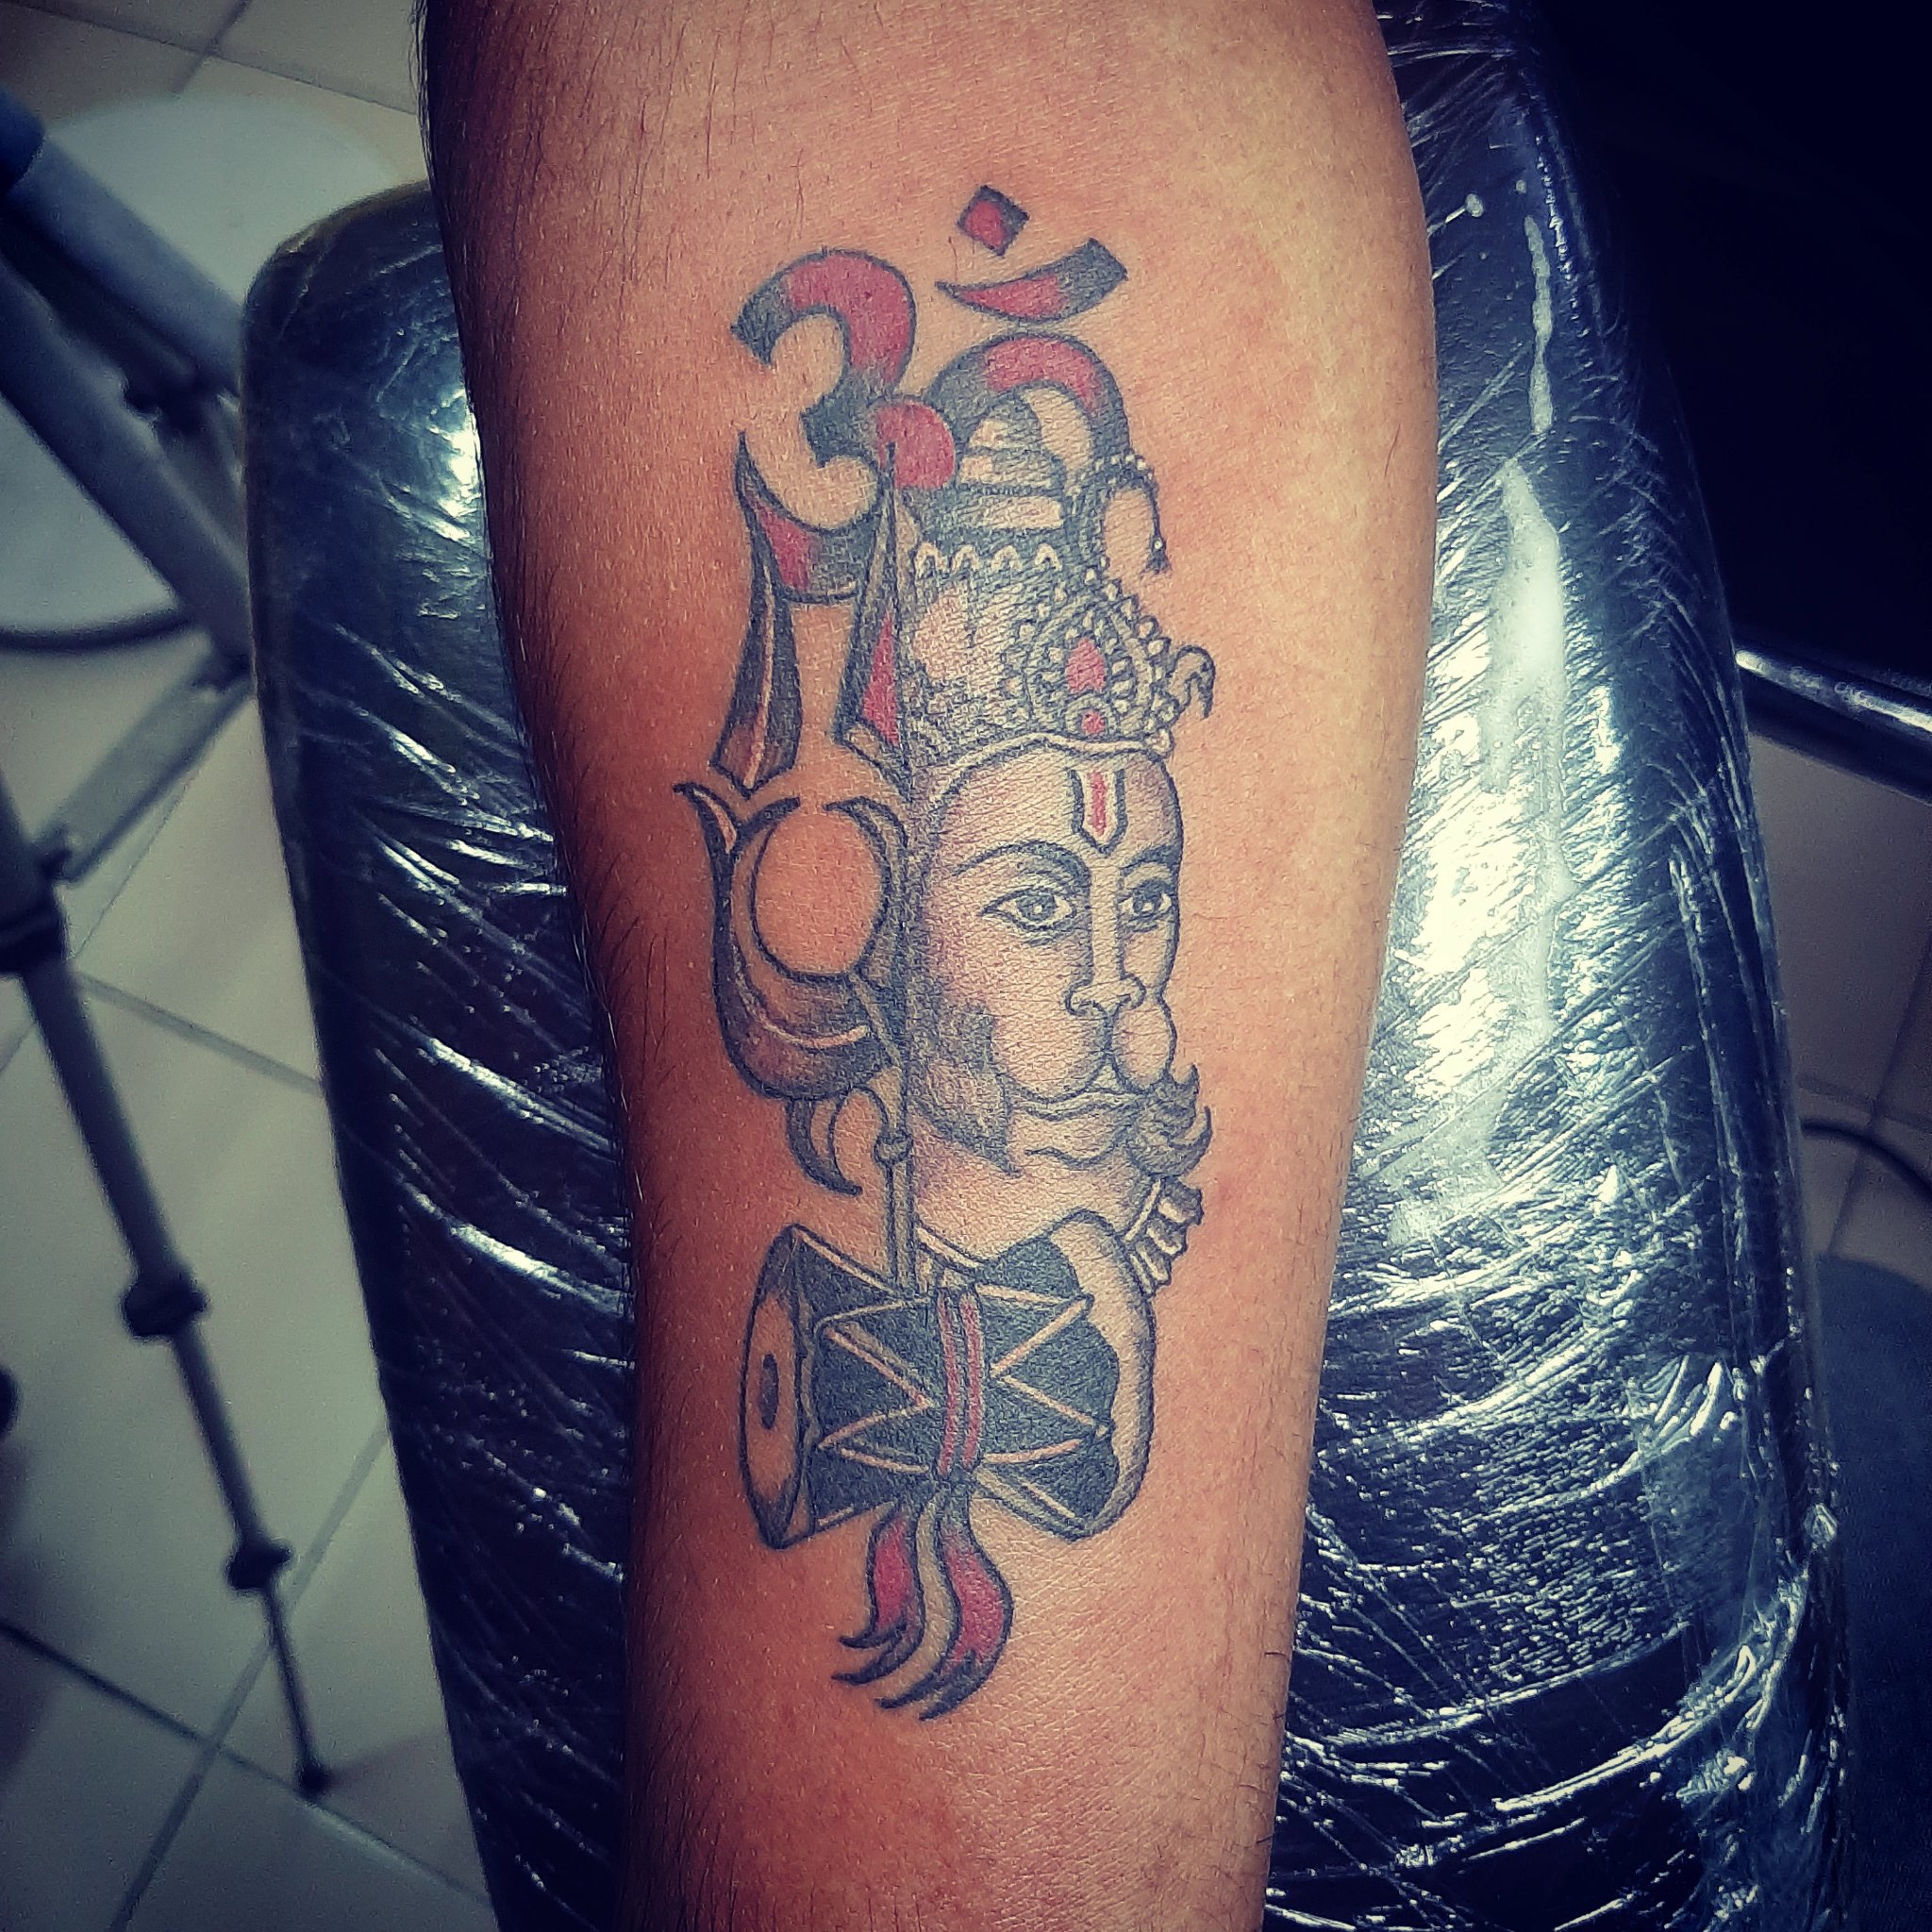 Hanuman tattoo |bajrangbali tattoo |samurai tattoo mehsana | Band tattoo  designs, Mahadev tattoo, Tattoos